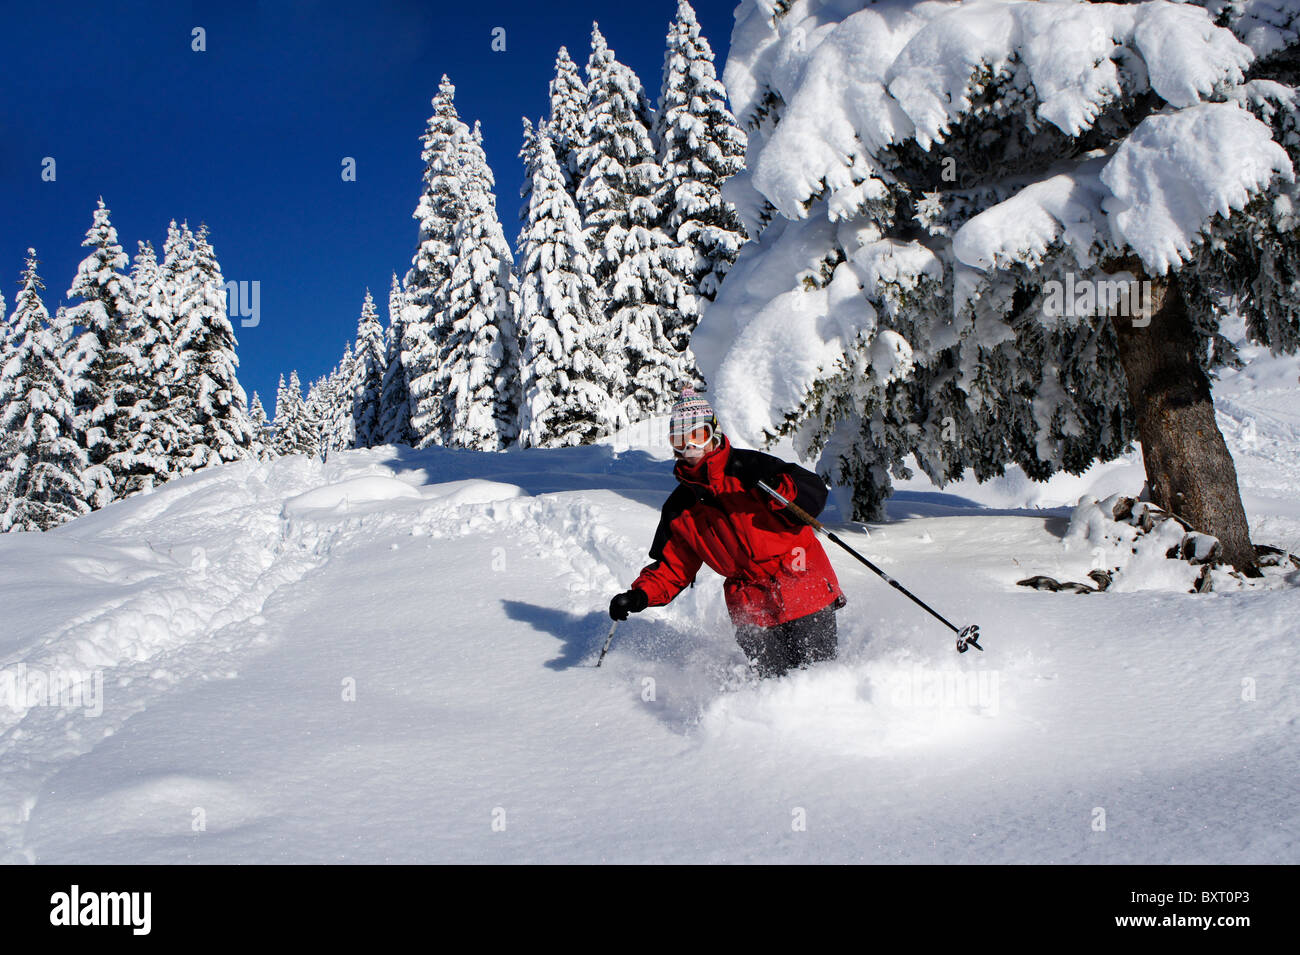 Skieur dans la neige profonde, station Adelboden, Suisse Banque D'Images